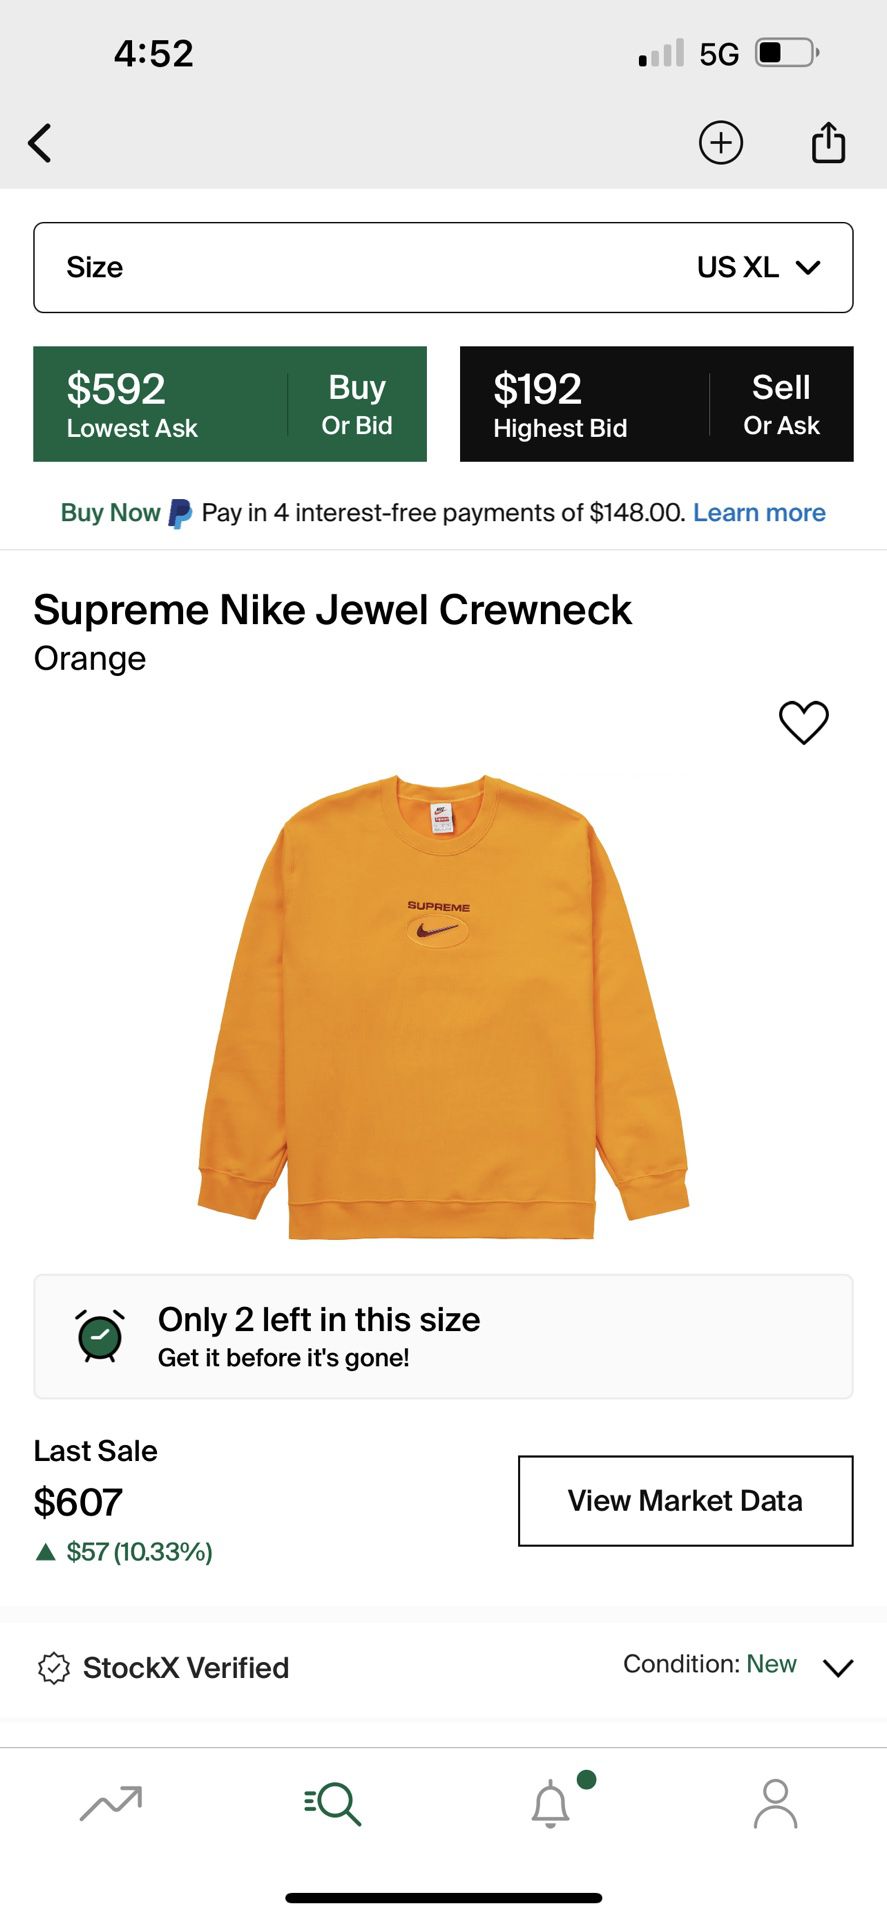 Supreme Nike jewel Crewneck 